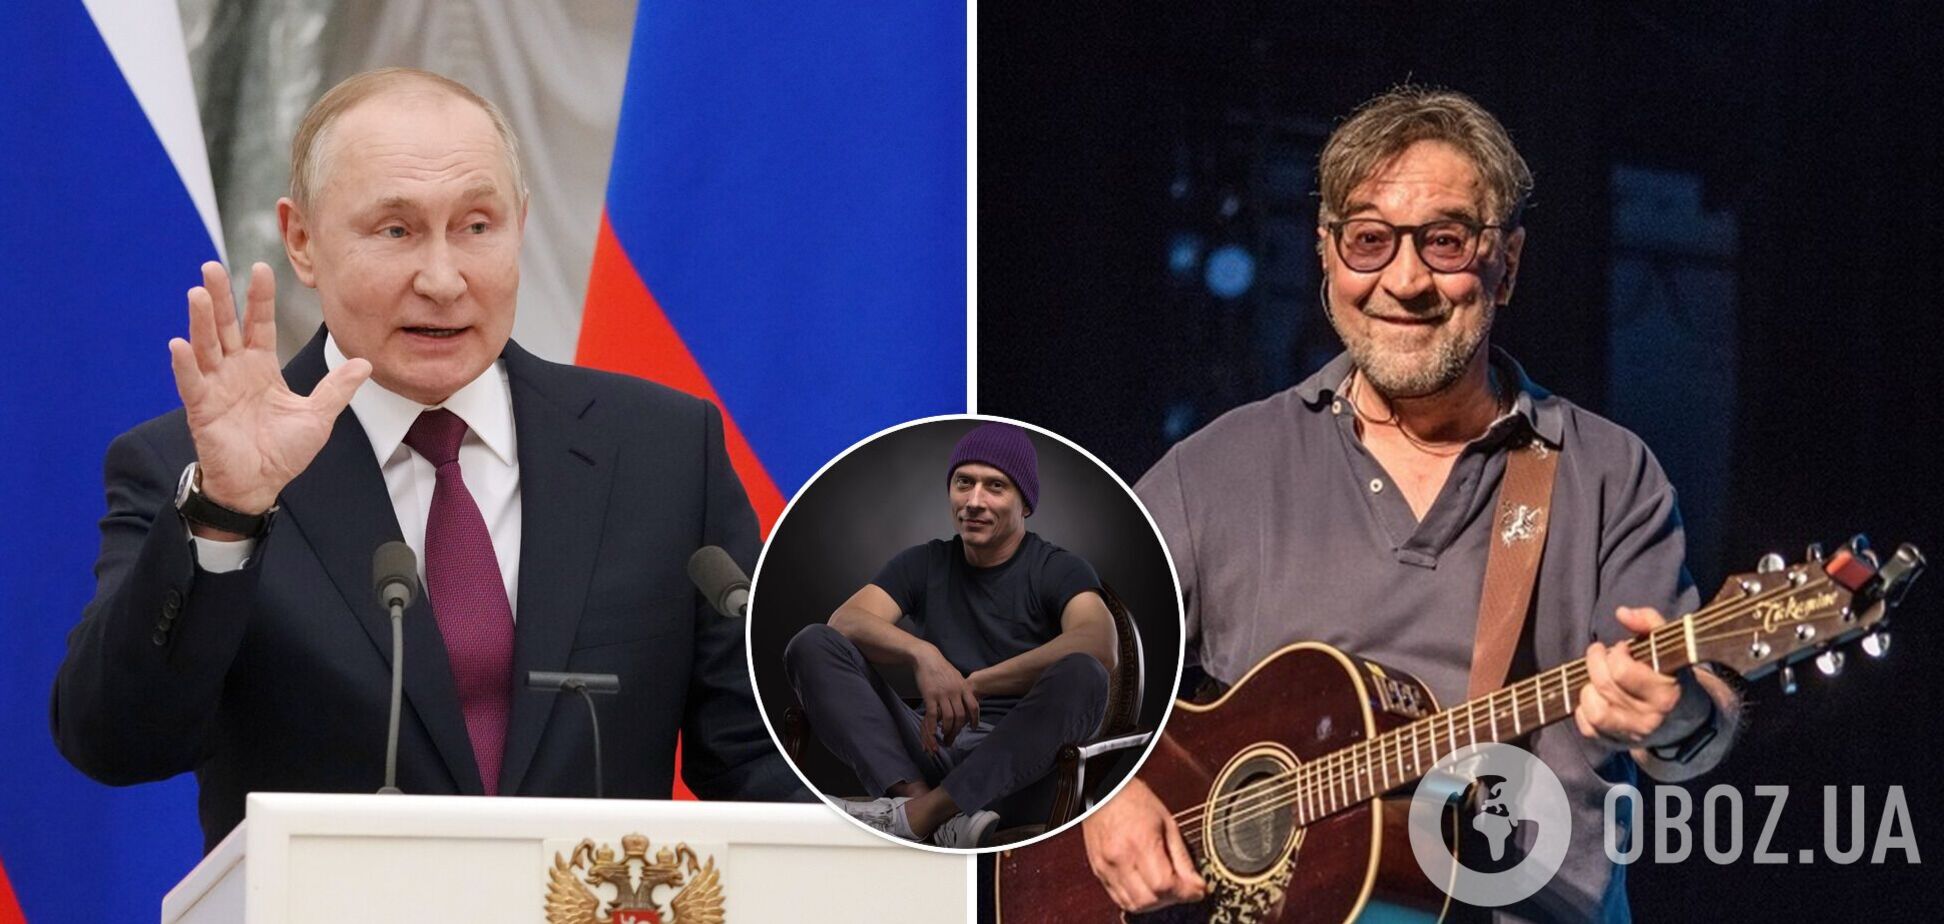 Російський художник показав справжнє обличчя Путіна. За це порівняння лідера ДДТ оштрафували на 50 000 рублів